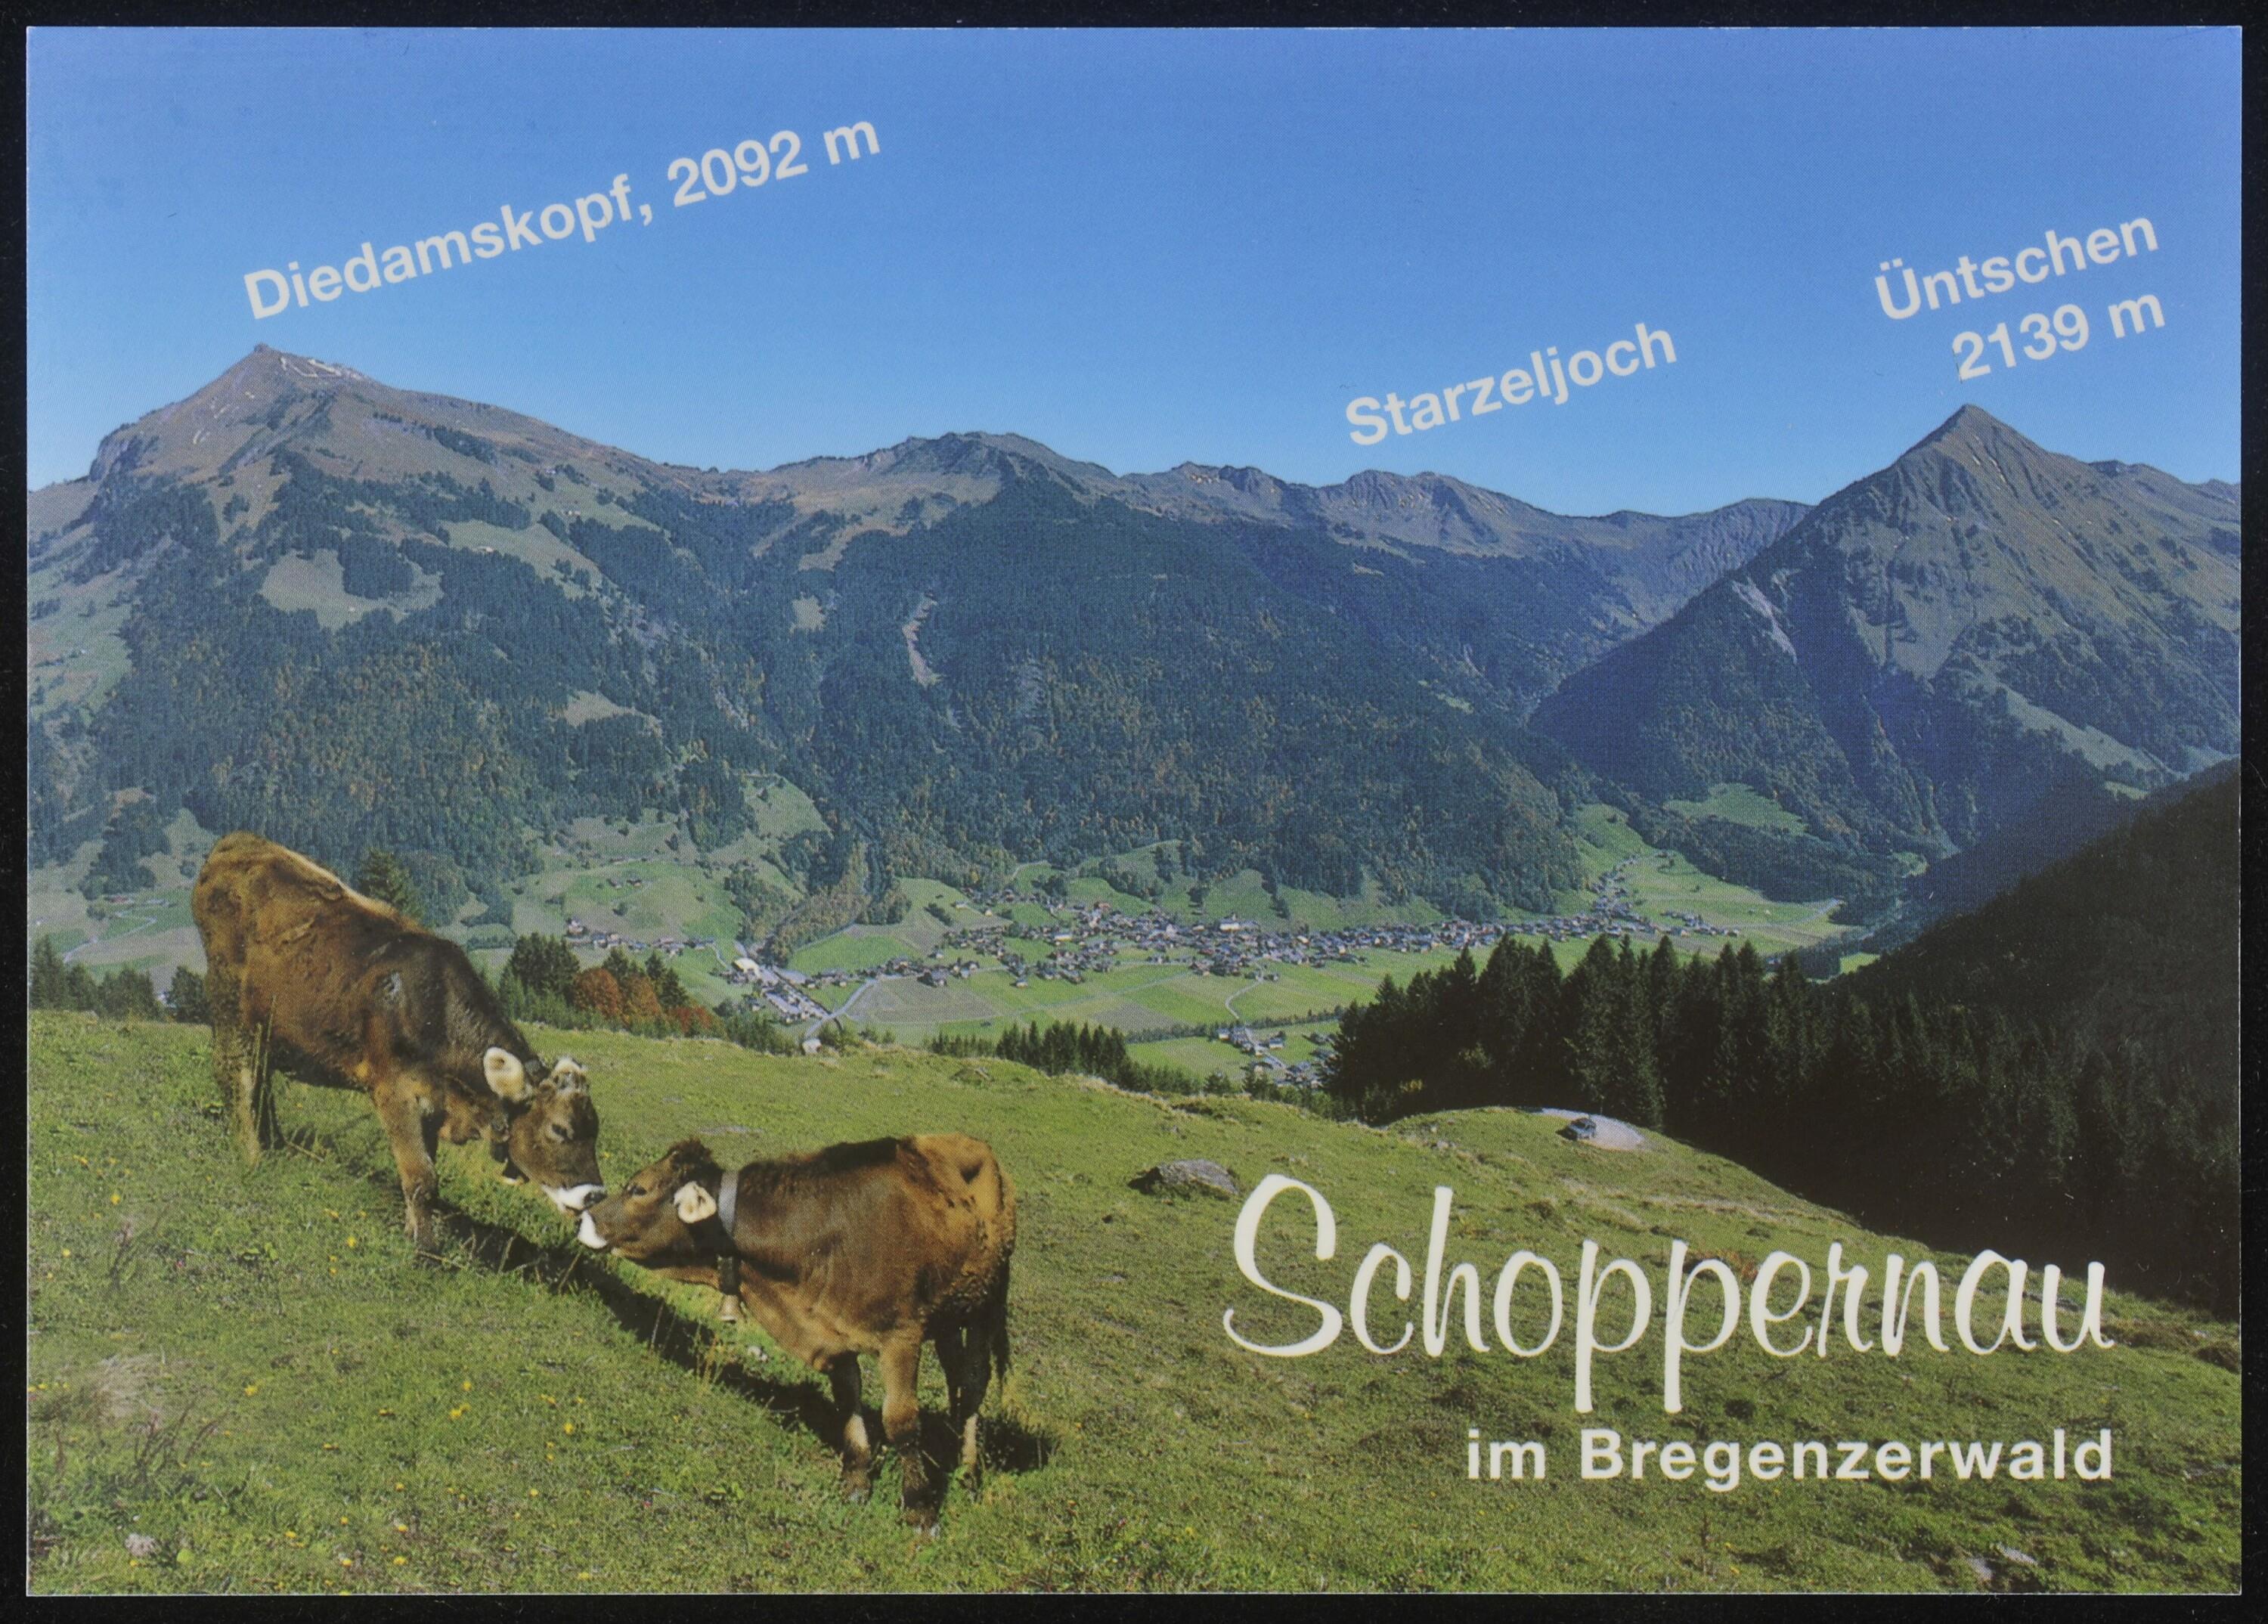 Schoppernau im Bregenzerwald></div>


    <hr>
    <div class=